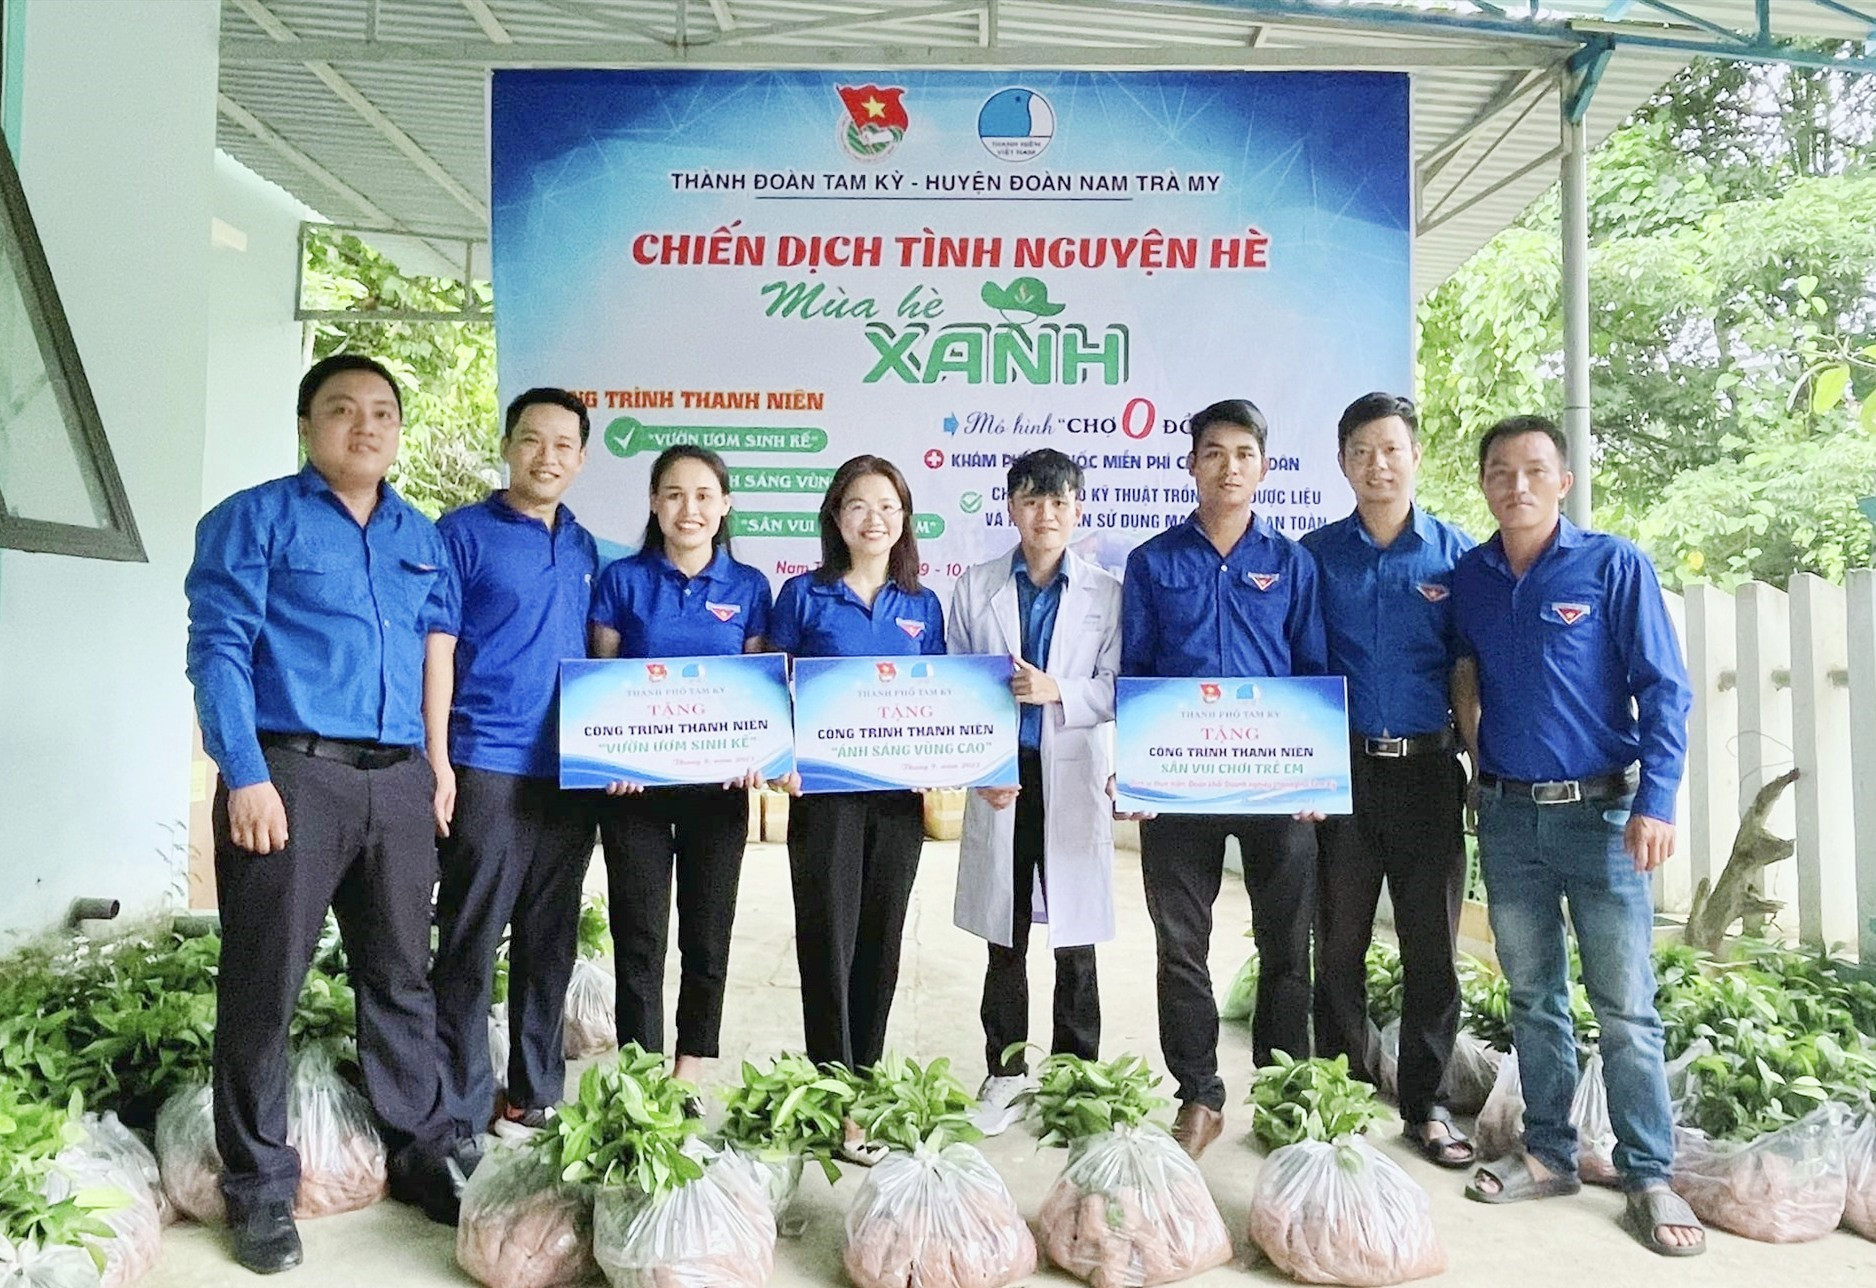 Thành đoàn Tam Kỳ tặng các công trình trong chuyến dịch tình nguyện “Mùa hè xanh” tại xã Trà Mai cho Huyện đoàn Nam Trà My. Ảnh: M.H